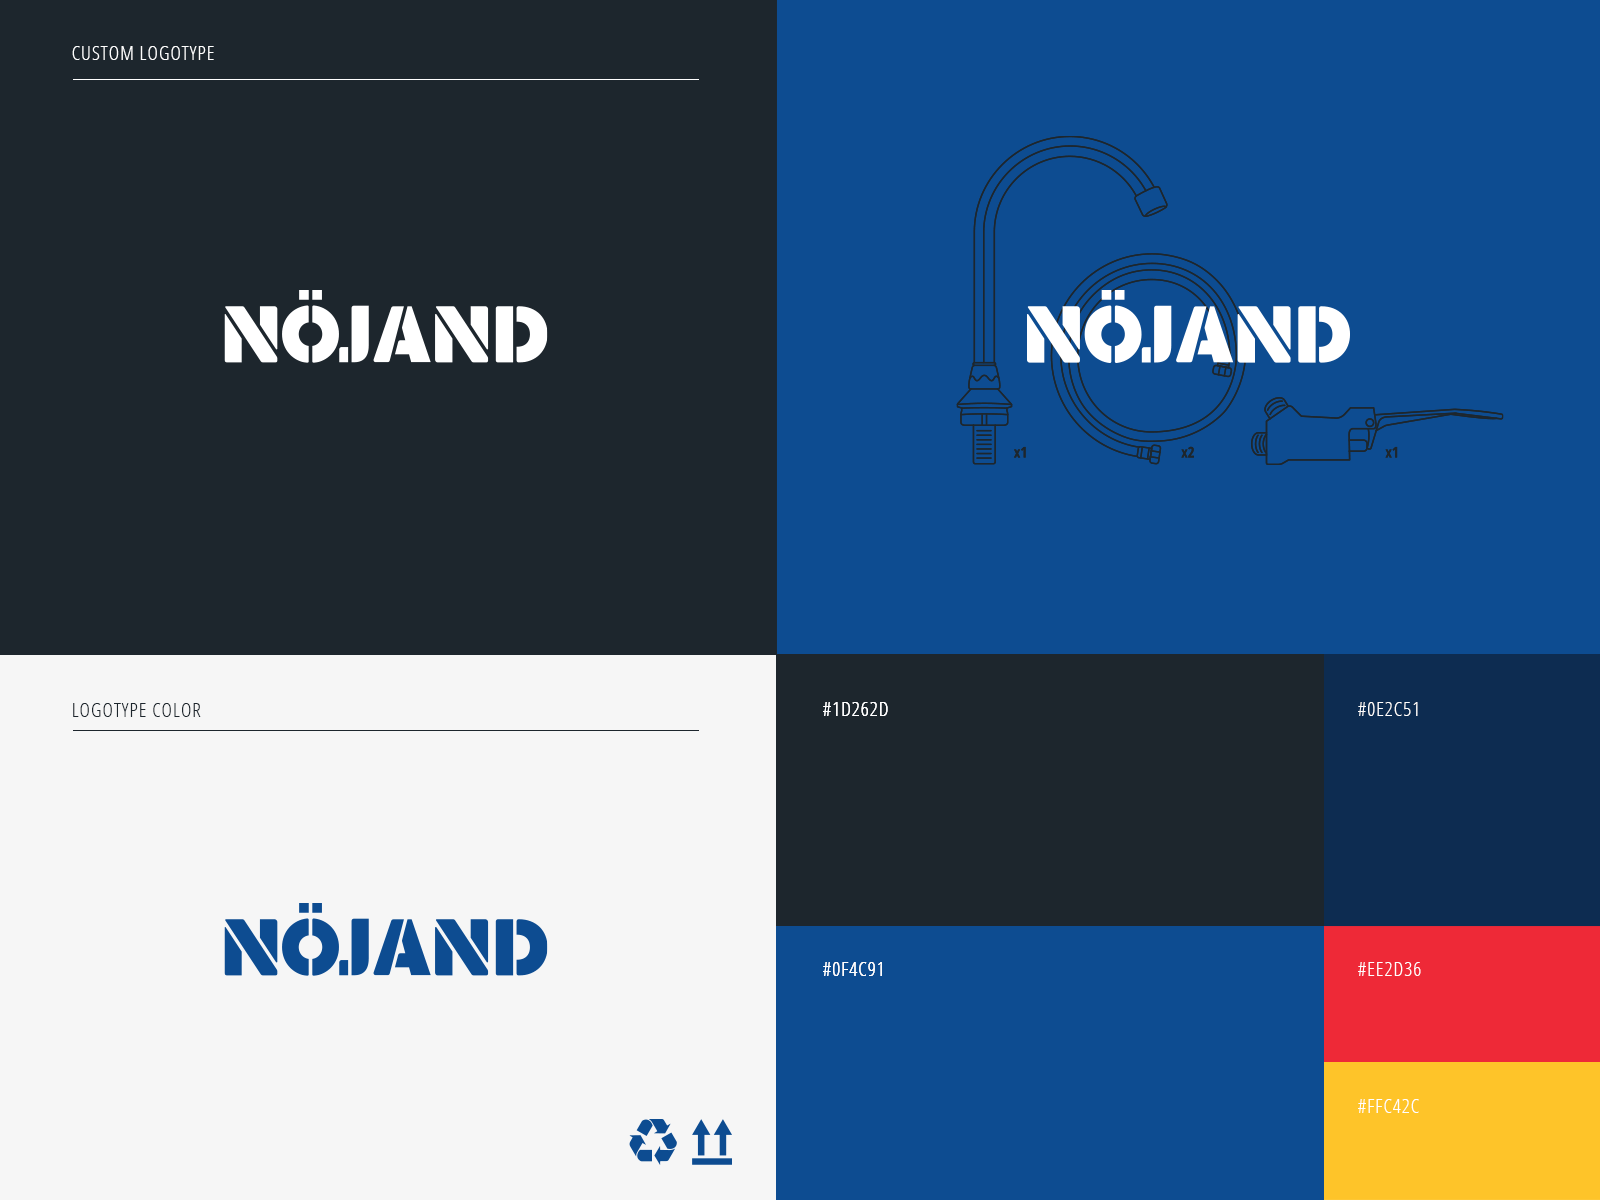 Brand Elements for Nöjand